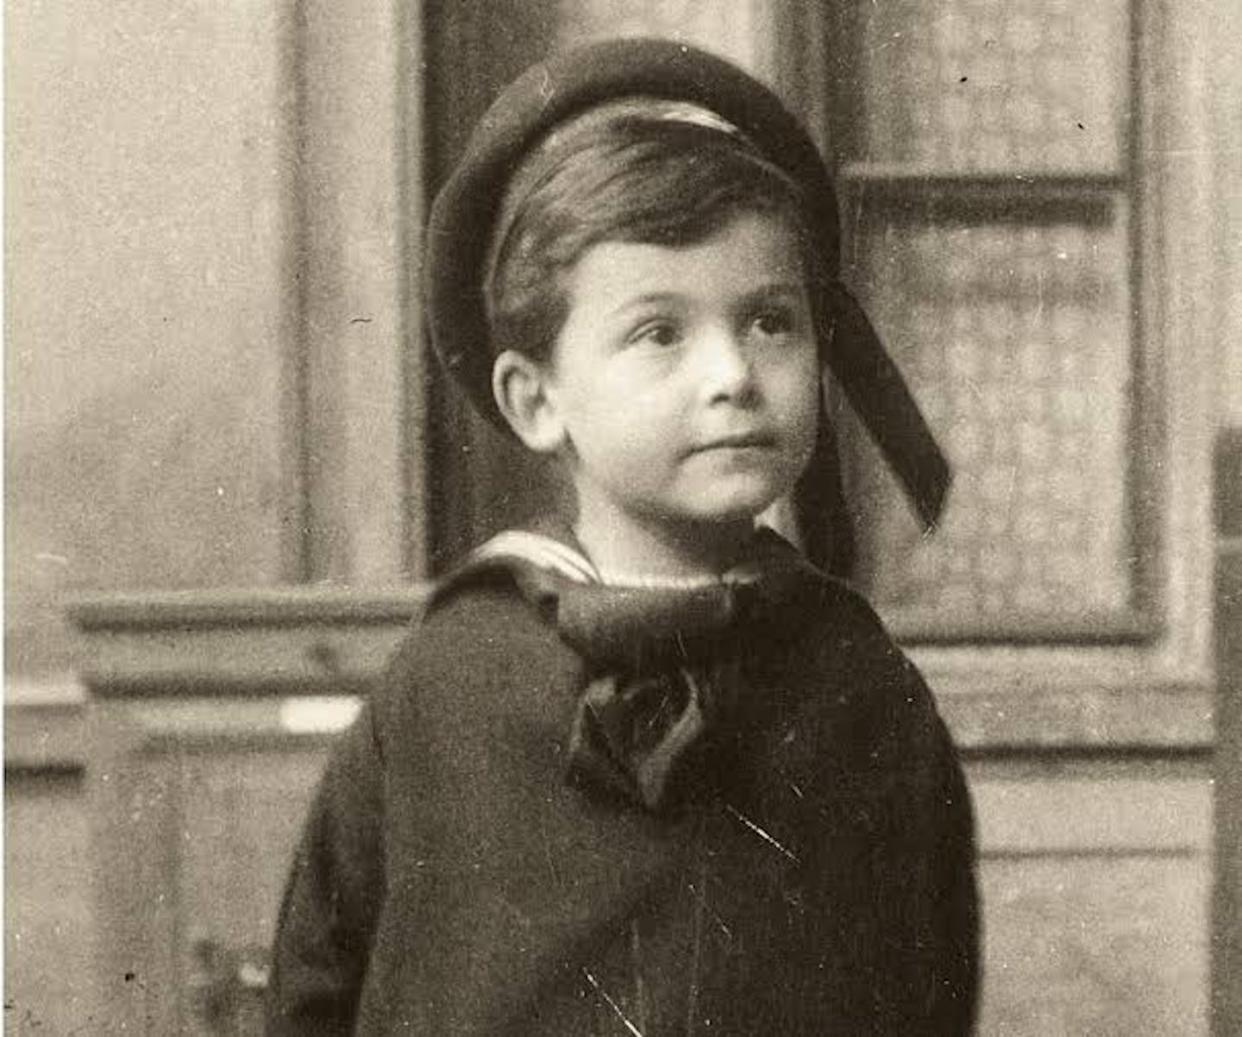 János Neumann nació en Budapest en 1903. Fue un niño prodigio que a la edad de 6 años podía dividir mentalmente cifras de 8 dígitos, era capaz de aprenderse el listín telefónico y bromeaba con su padre en griego clásico. <a href="https://es.wikipedia.org/wiki/Archivo:John_von_Neumann_as_child.jpg" rel="nofollow noopener" target="_blank" data-ylk="slk:Wikimedia commons;elm:context_link;itc:0;sec:content-canvas" class="link ">Wikimedia commons</a>